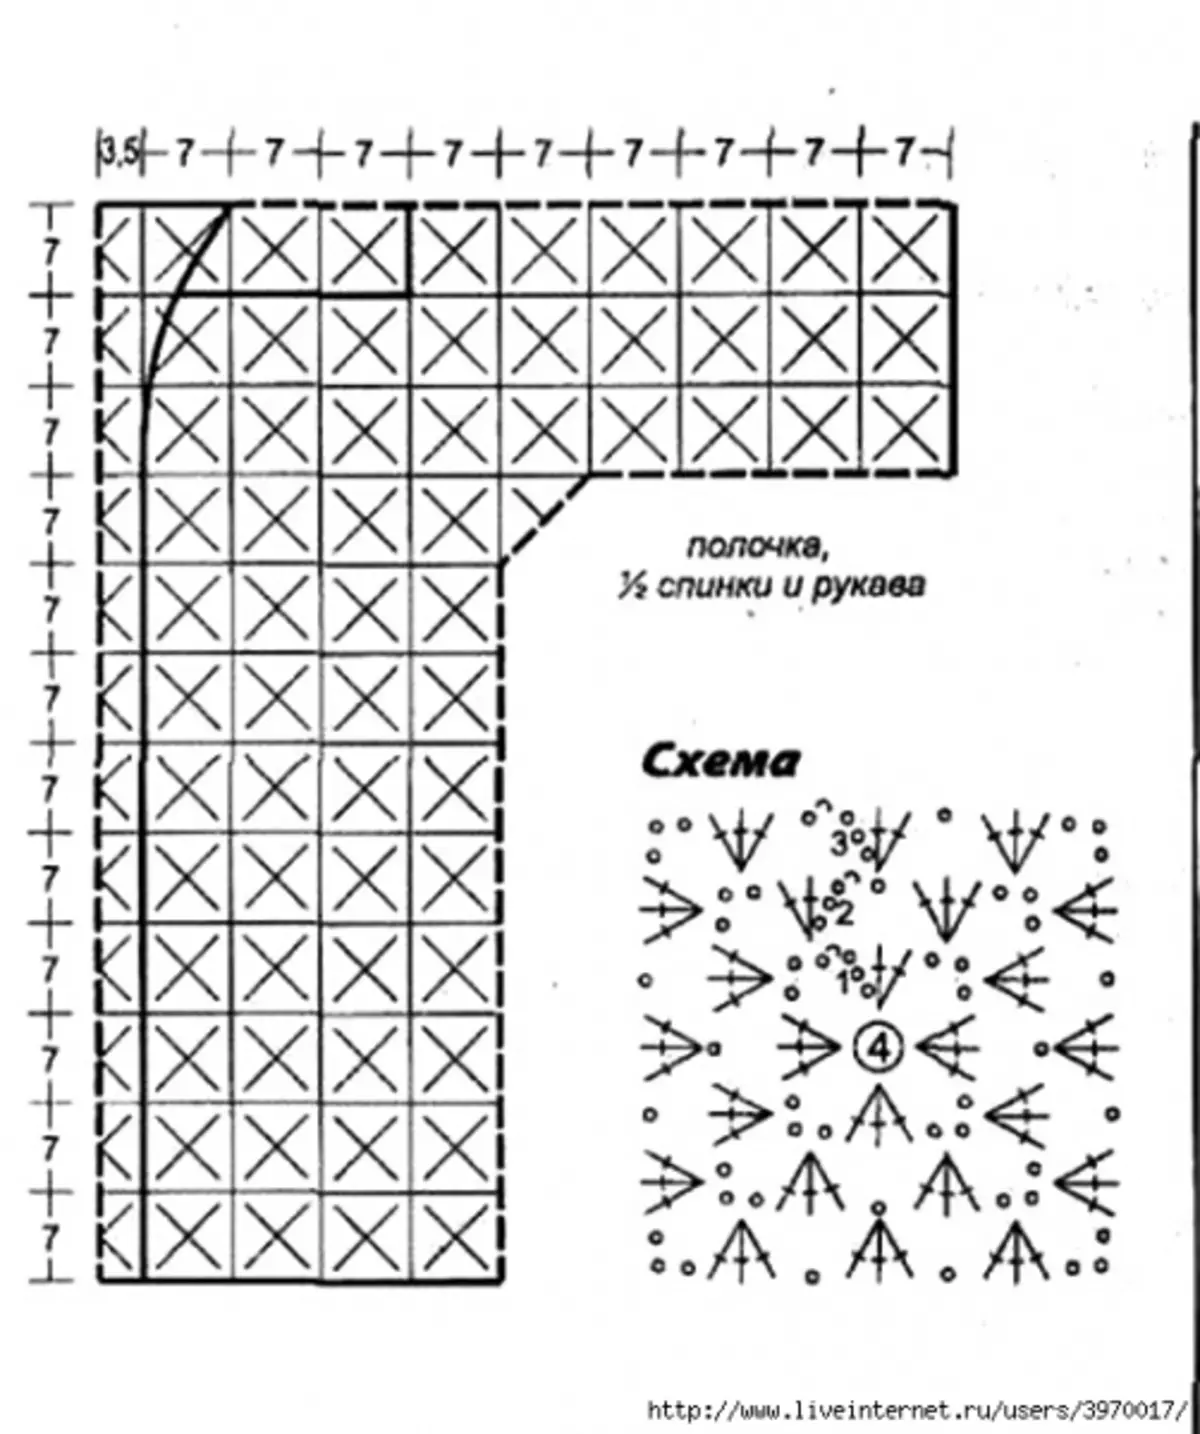 Схема для вязания кардигана крючком из квадратиков